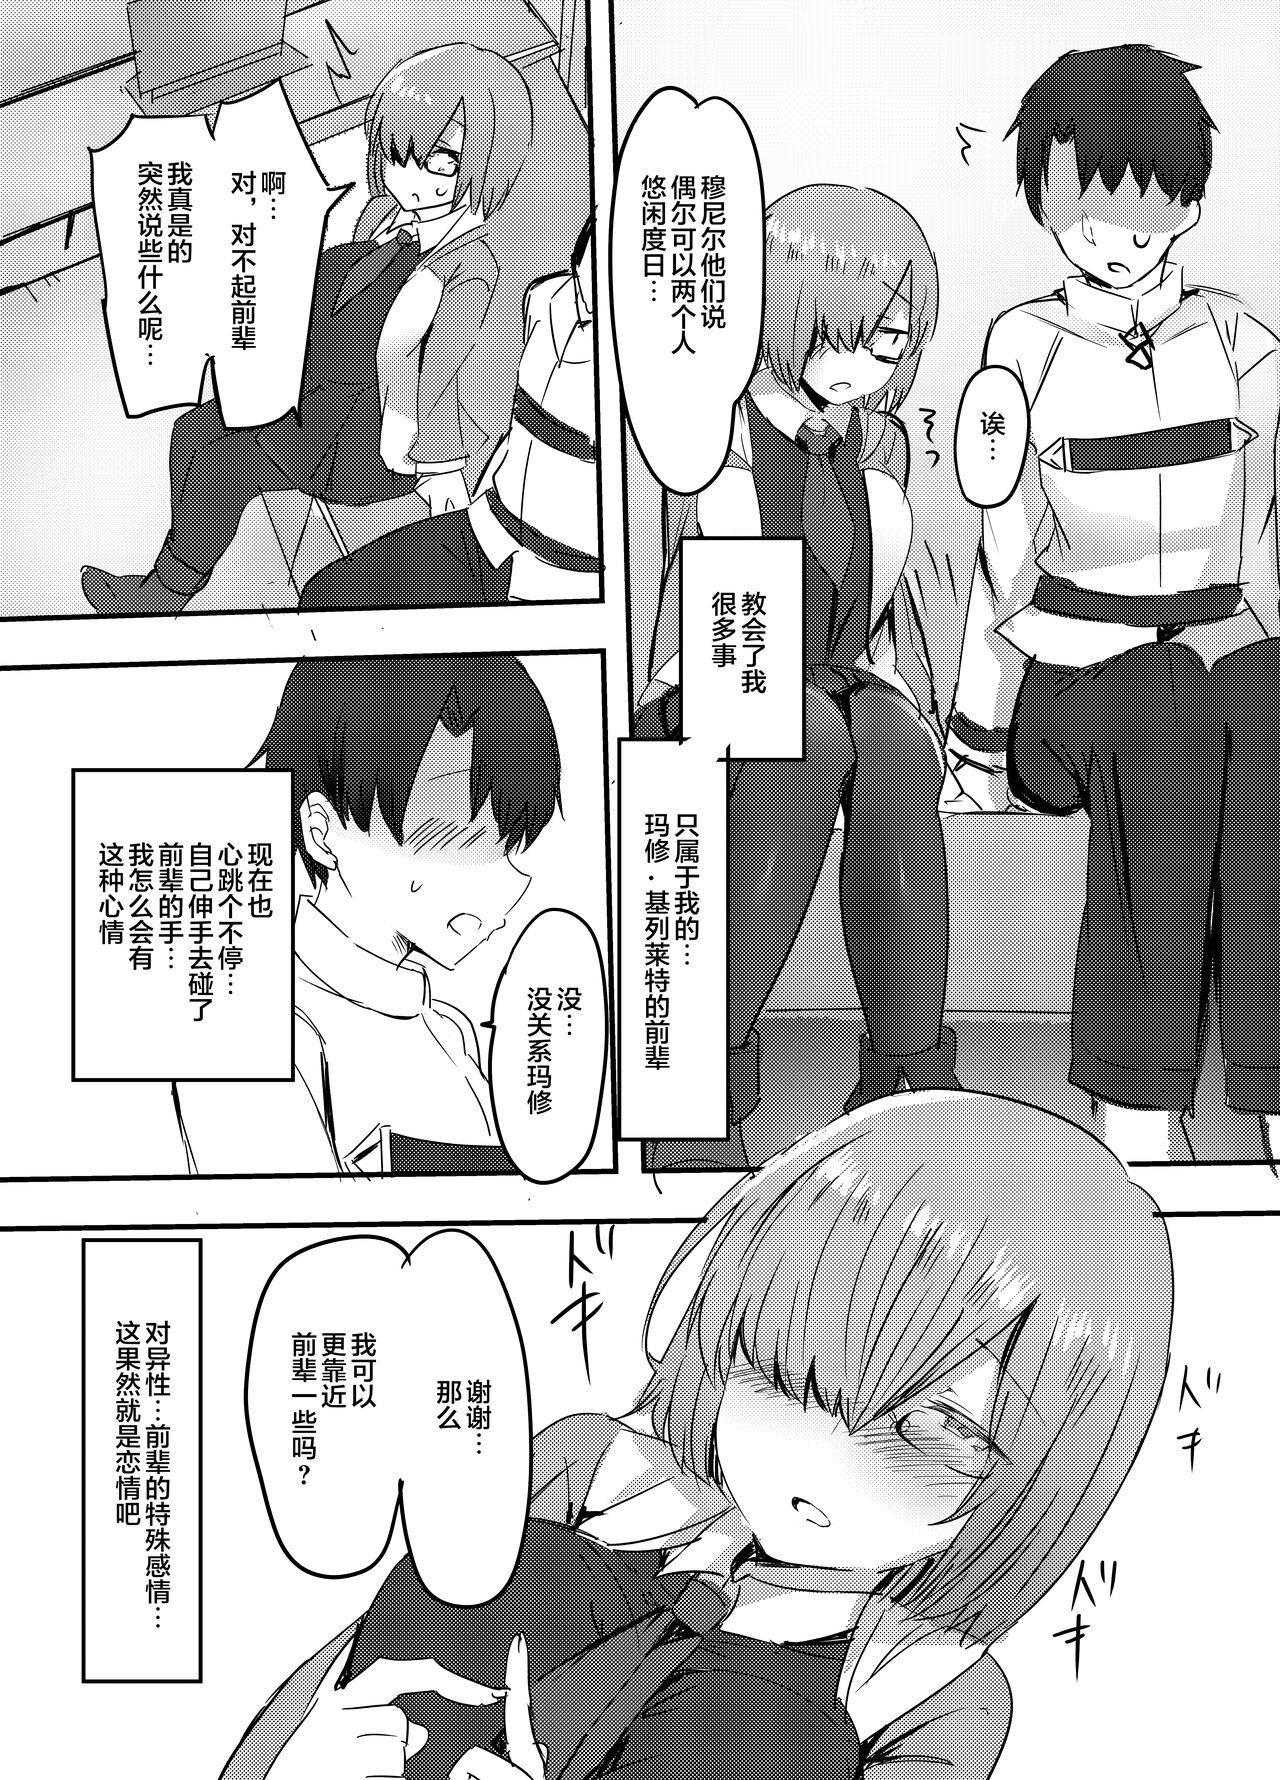 Caught Daisuki na Daisuki na Watashi dake no Senpai. - Fate grand order Fitness - Page 2